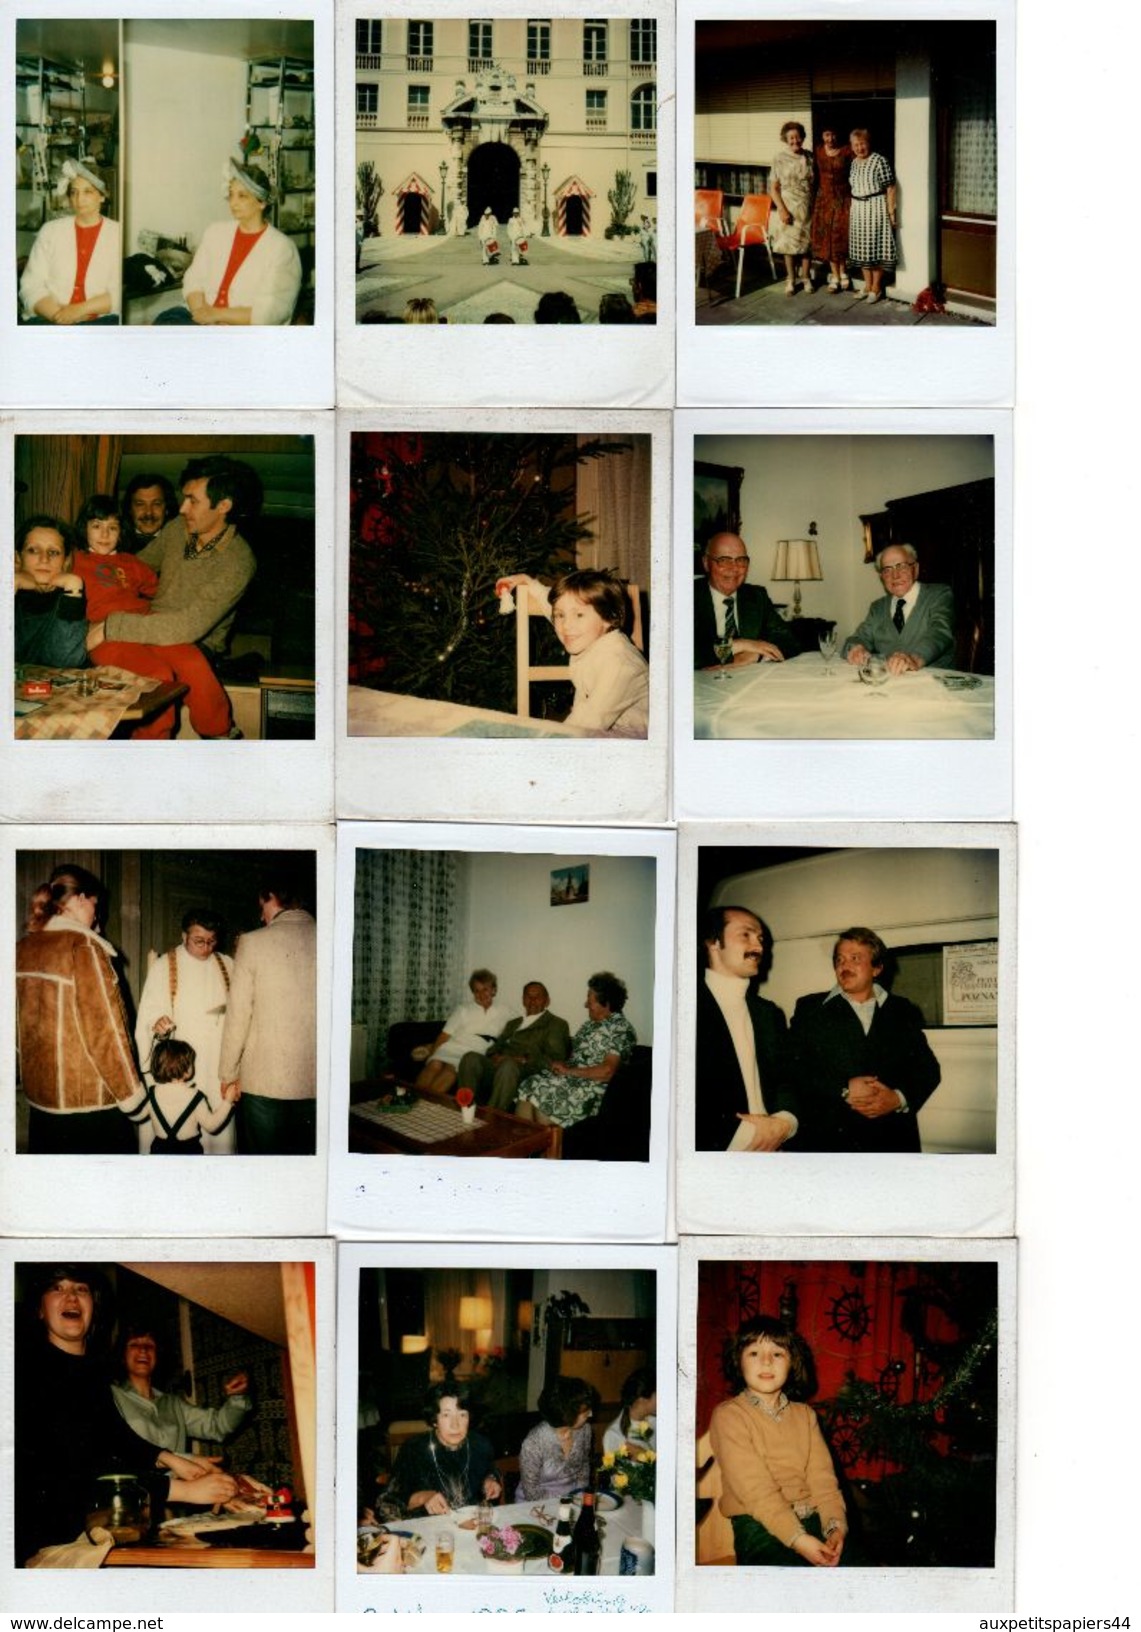 Lot de 130 Photos Couleur Polaroids Originales, Personnes, lieux, divers thèmes 1970/80